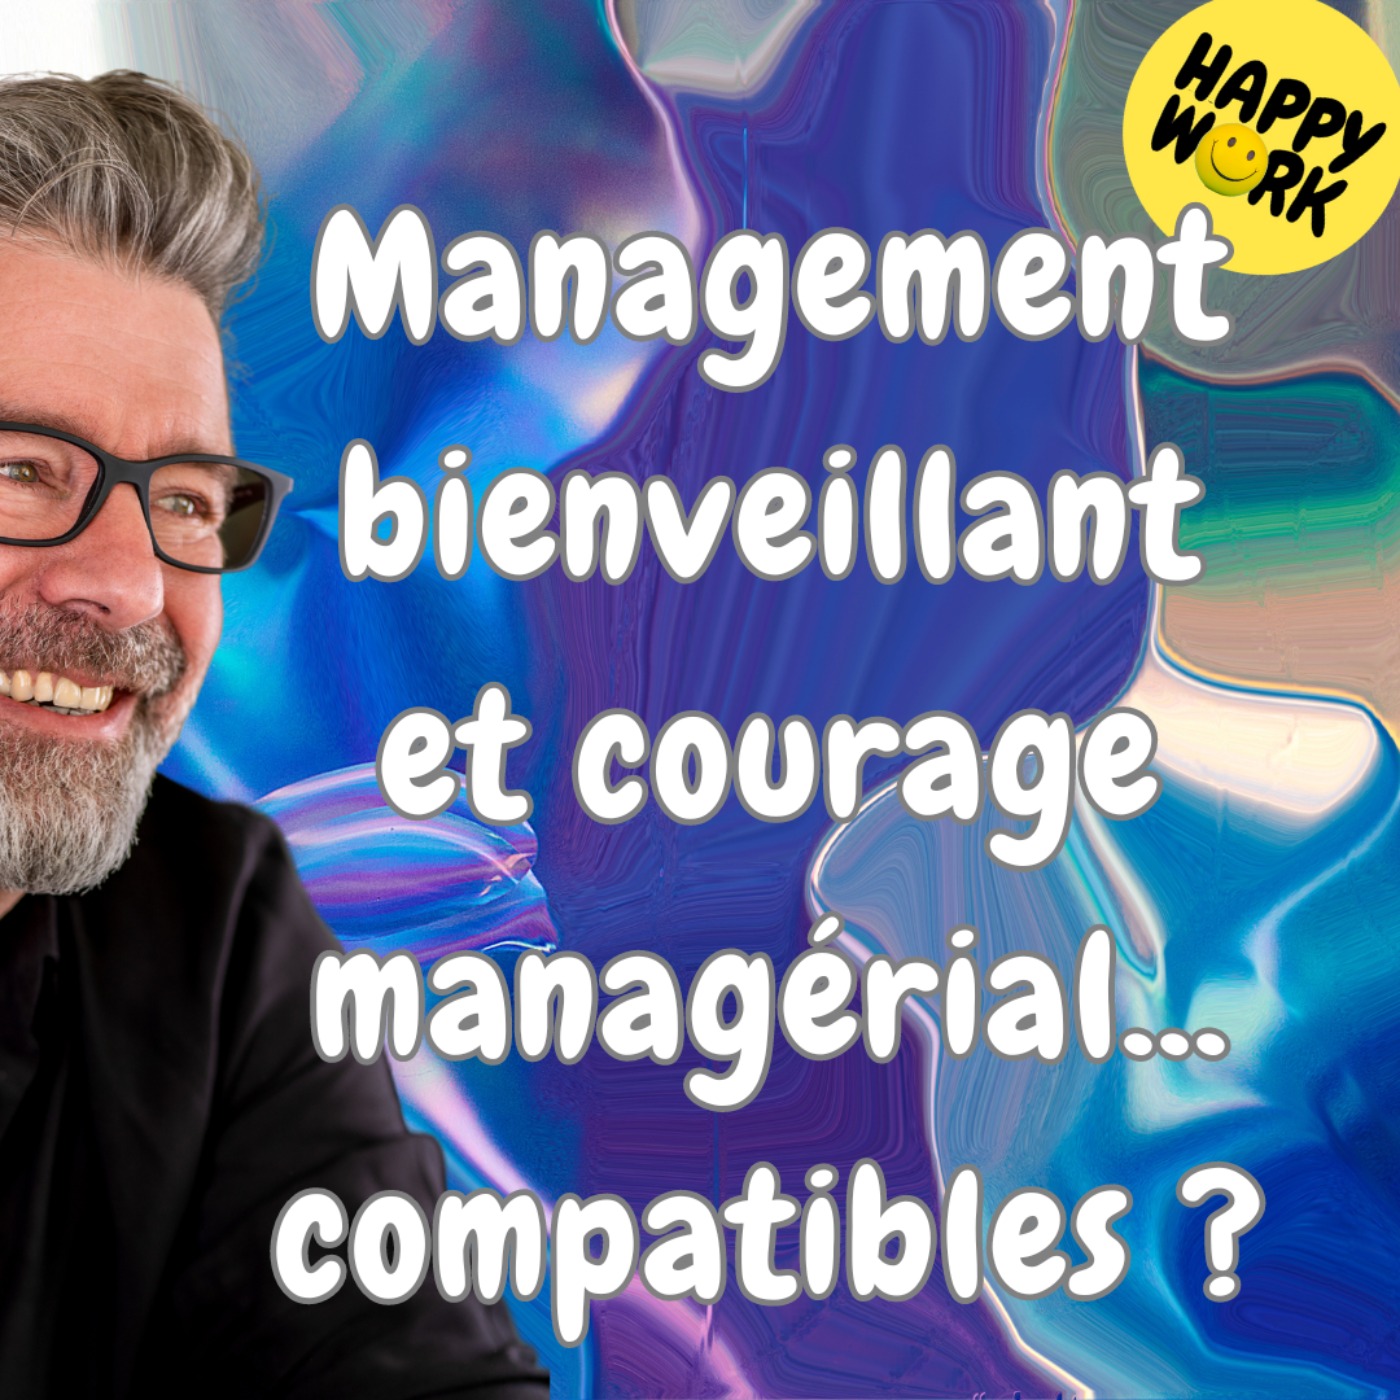 cover art for #1504 -Management bienveillant et courage managérial... compatibles ? 